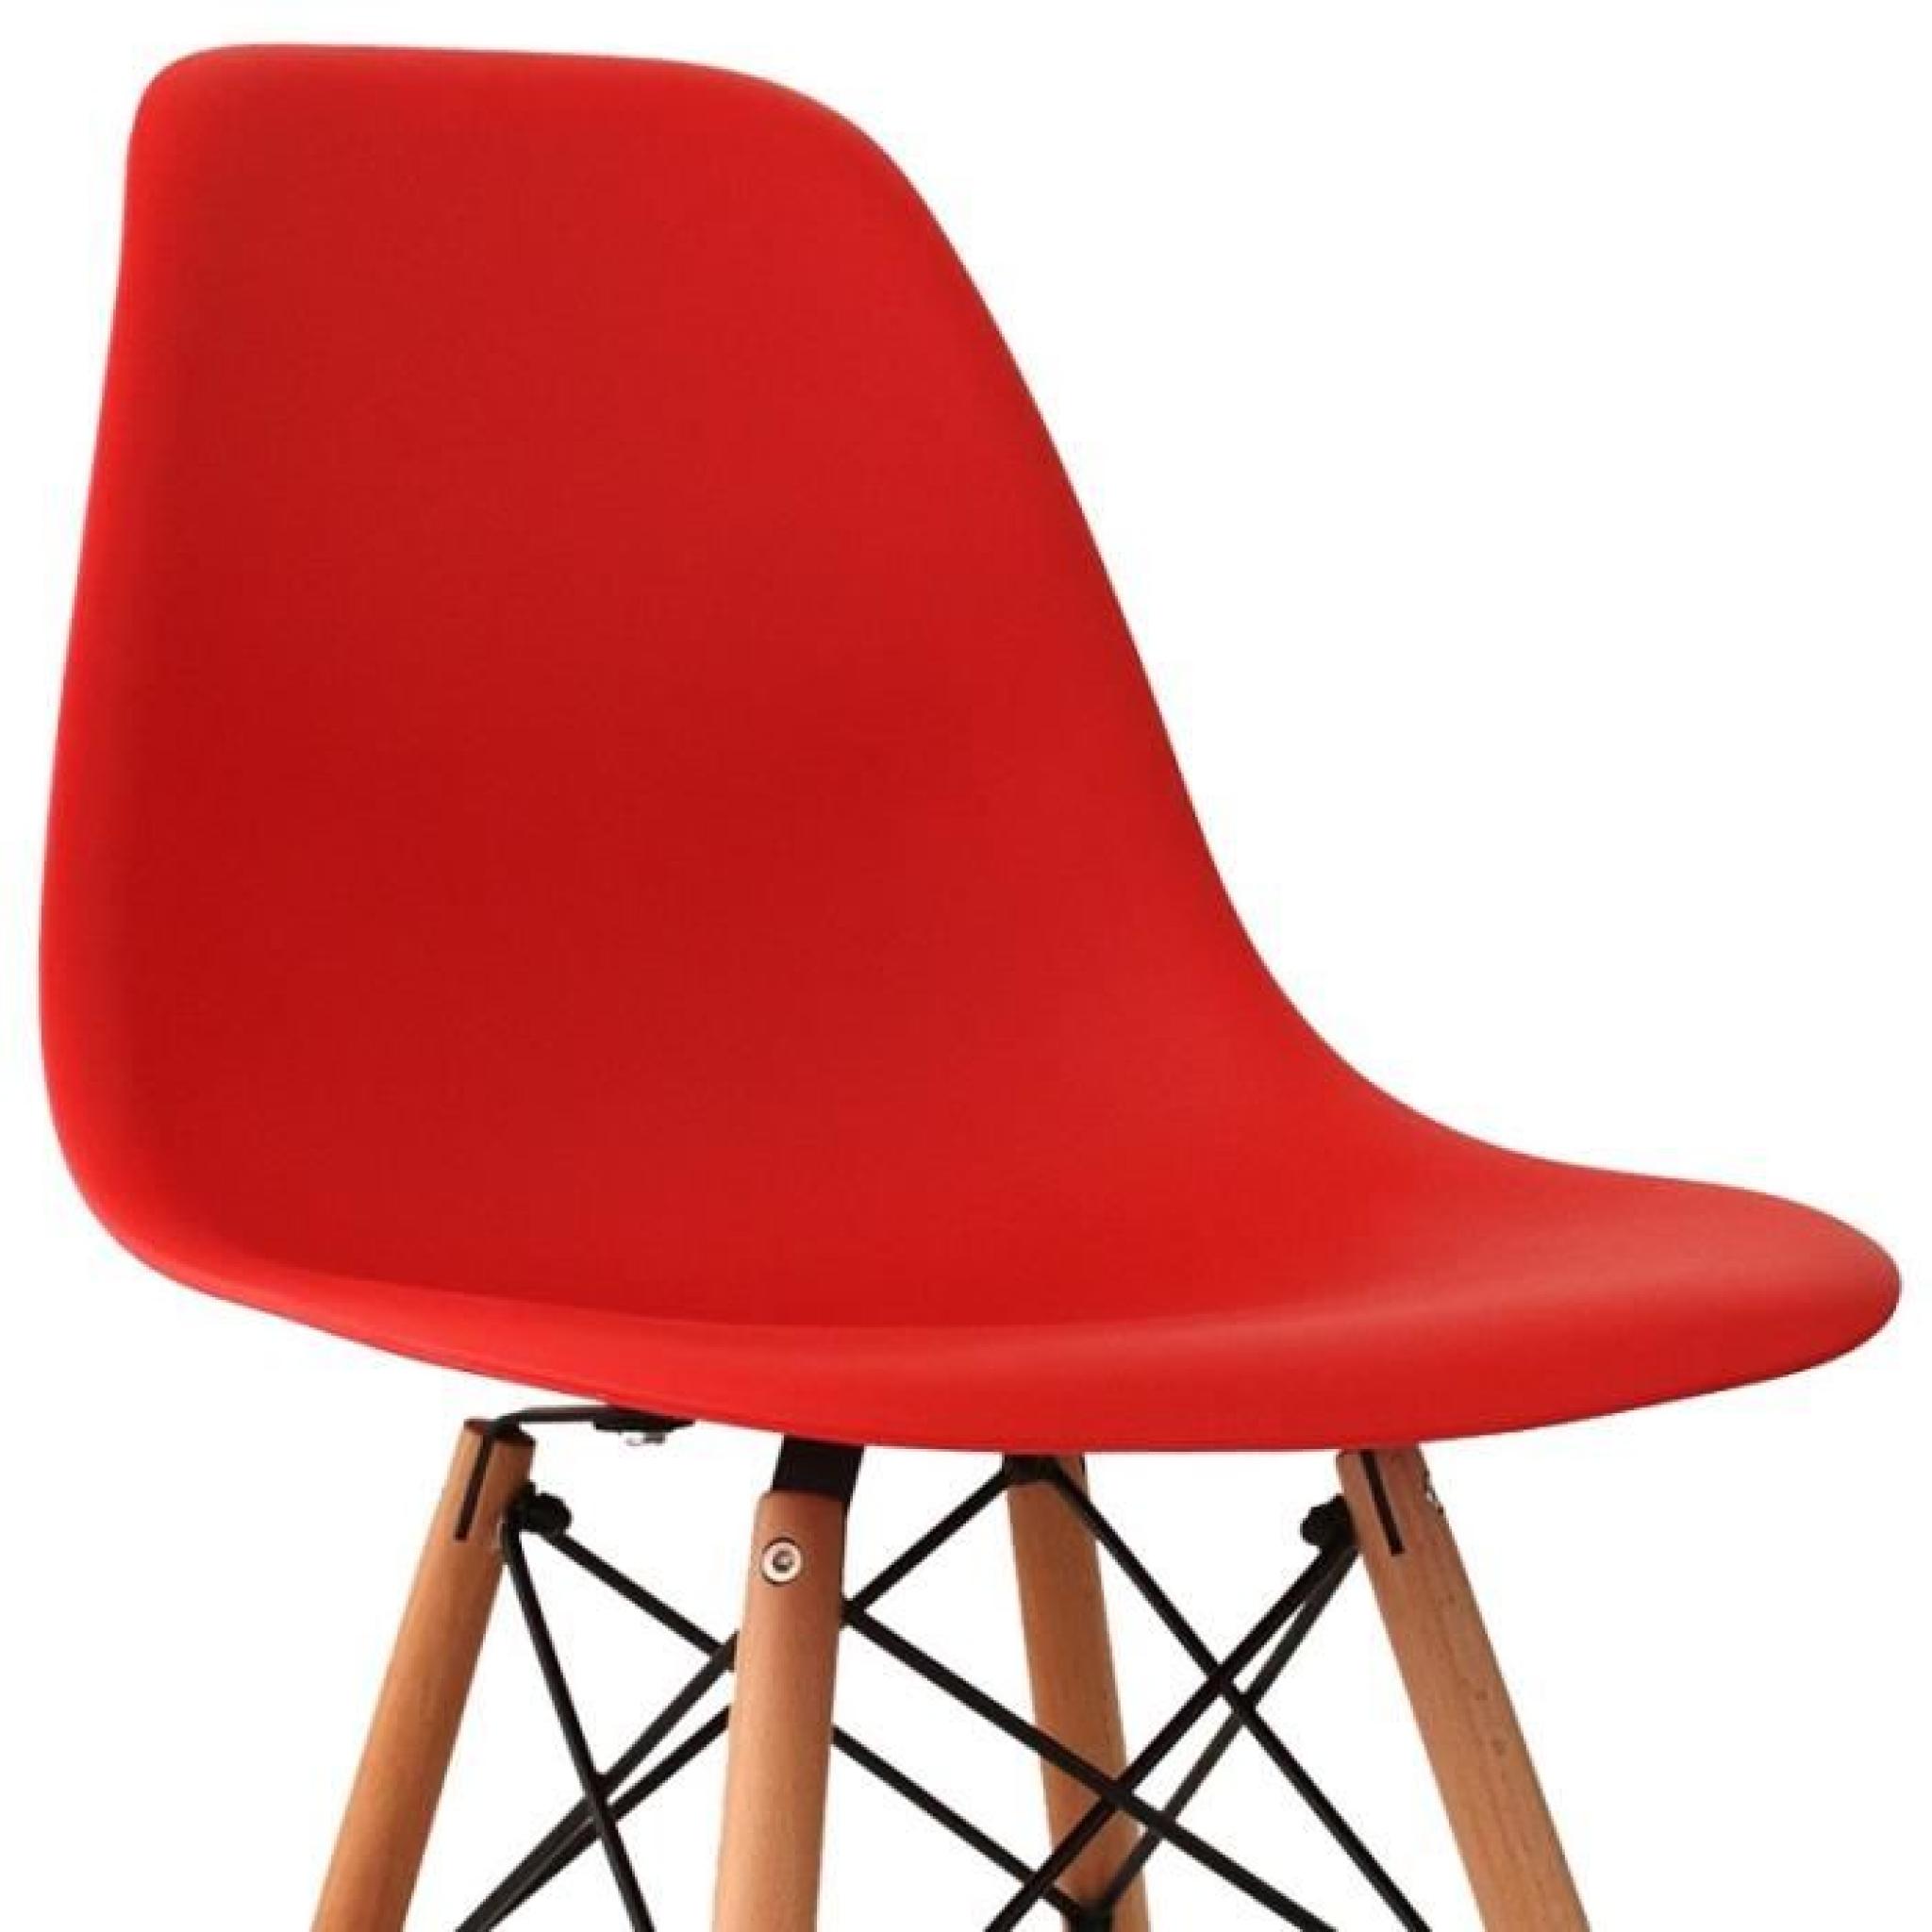 Chaise design rouge pieds en bois RETRO lot de 6 pas cher